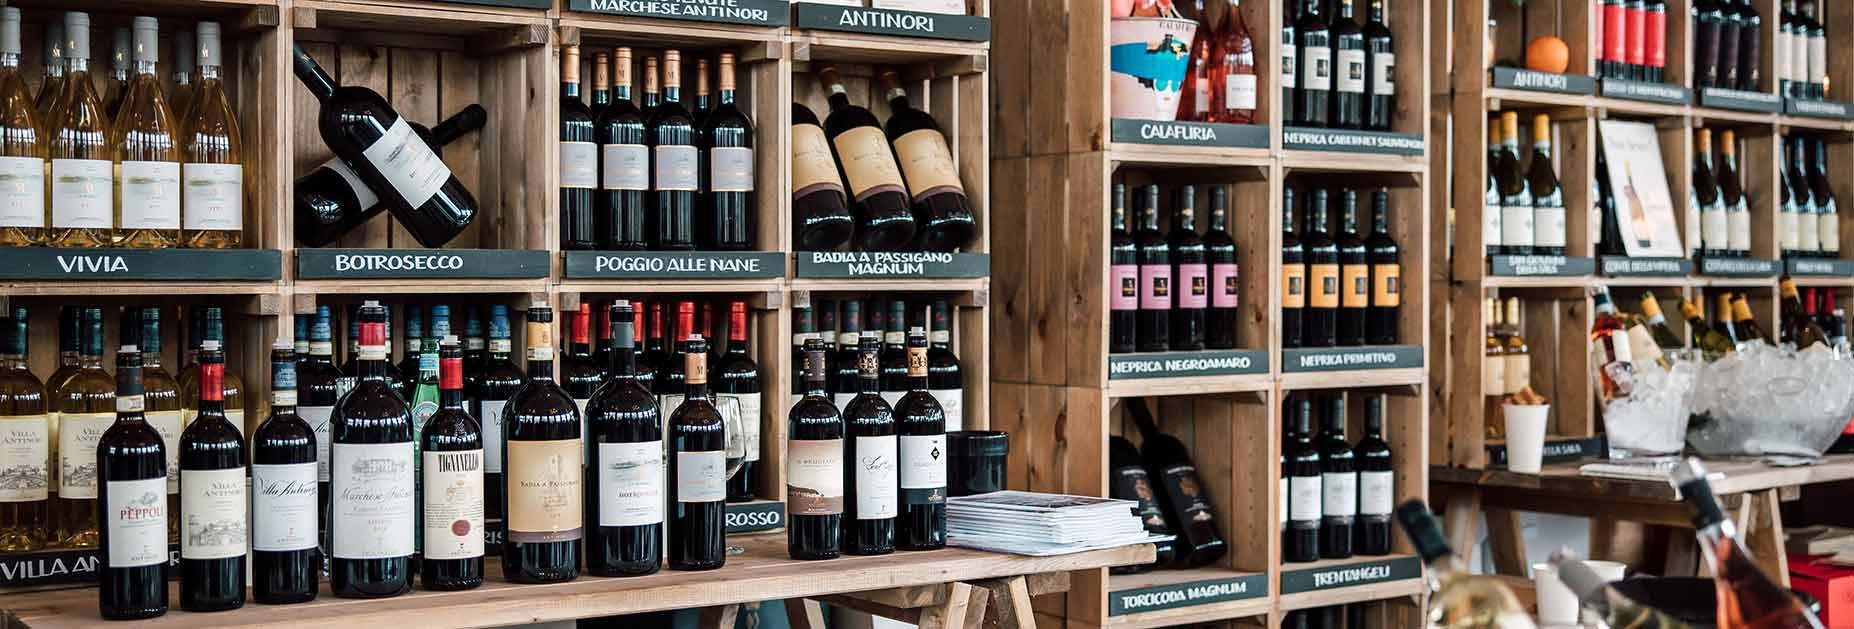 Verschiedene Flaschenformen der Weingüter Antinori in Italien